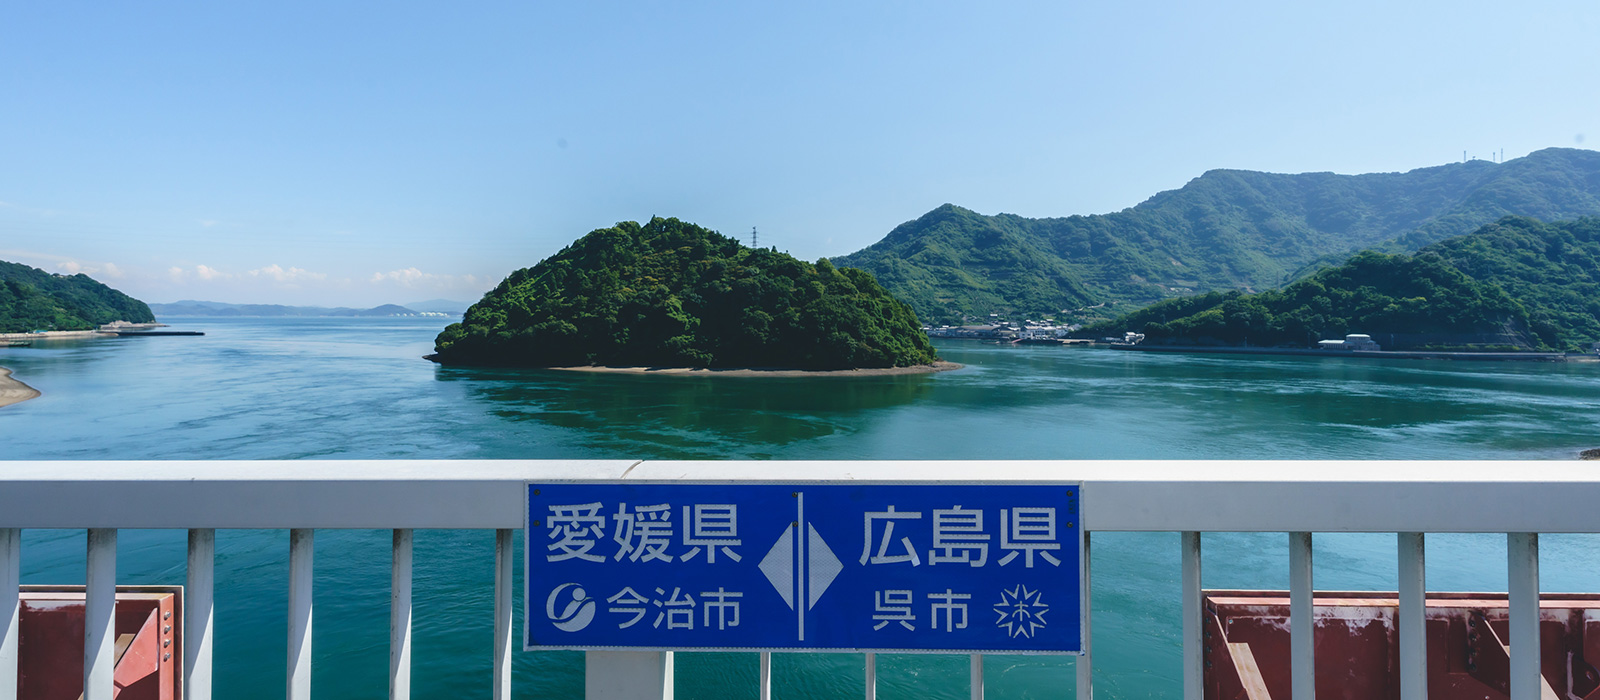 とびしま海道の終端。潮待ち港の風情を残す岡村島。その1